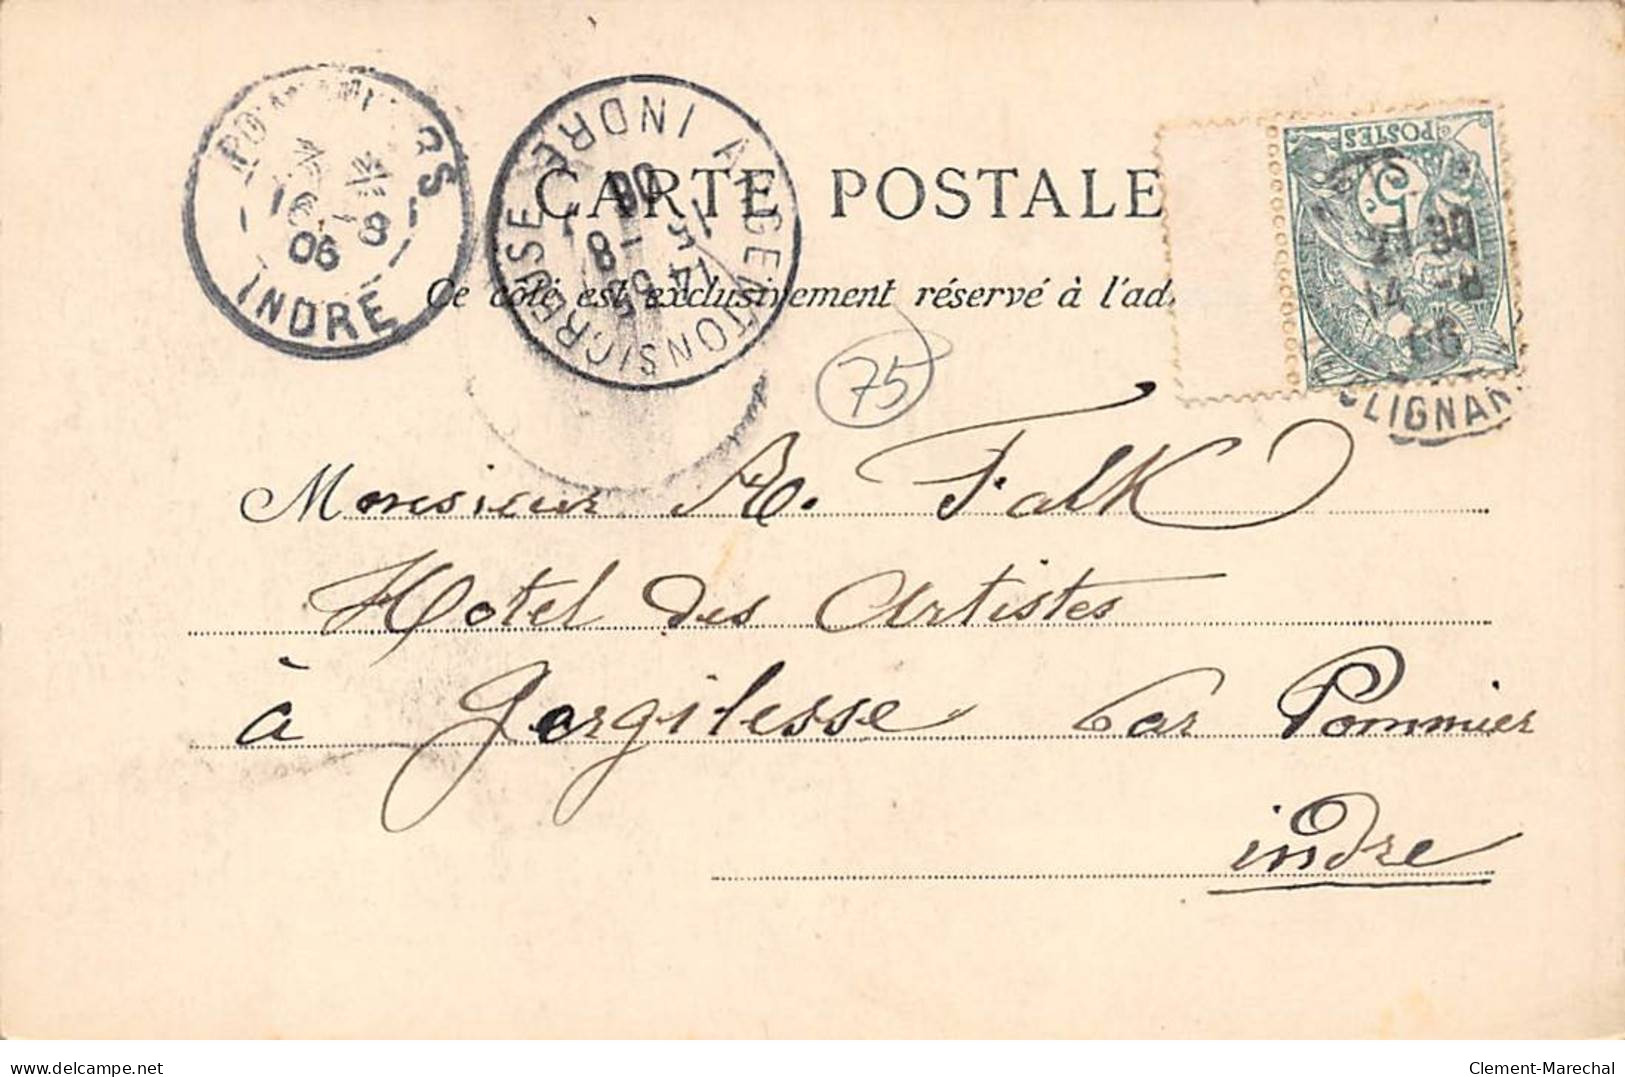 PARIS - Champeau En 1860 - Place De La Bourse - Très Bon état - District 02